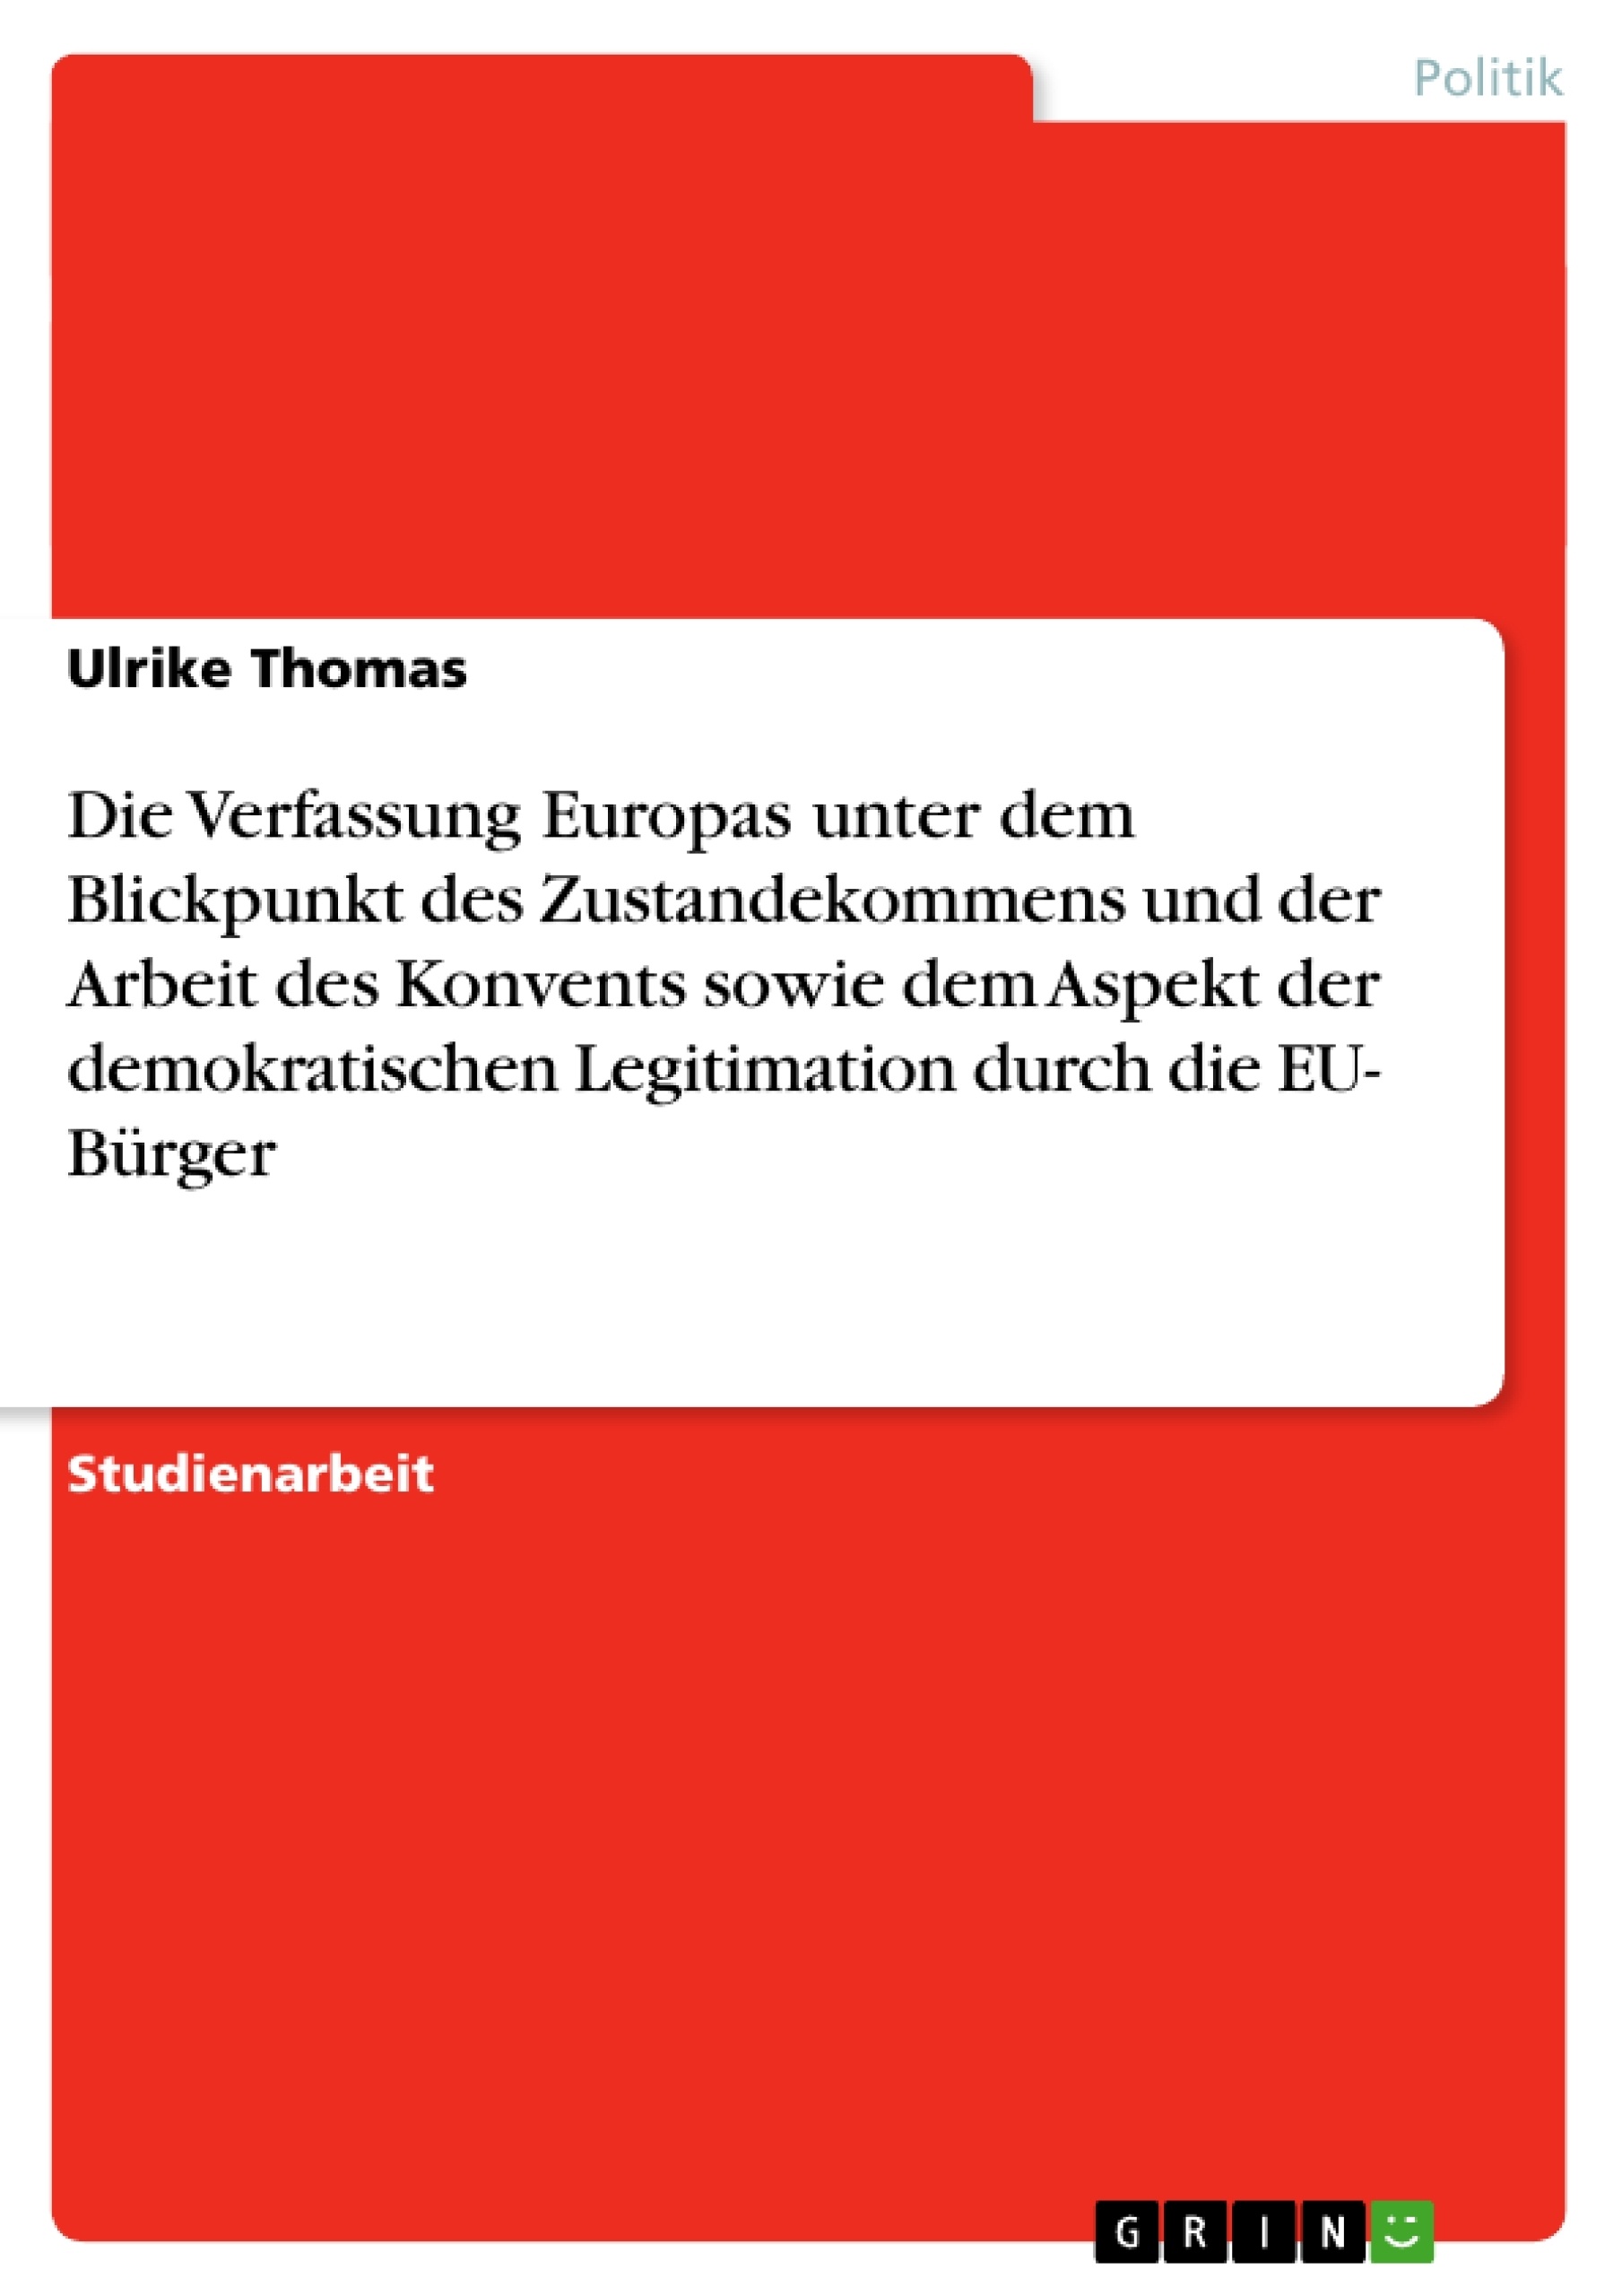 Título: Die Verfassung Europas unter dem Blickpunkt des Zustandekommens und der Arbeit des Konvents sowie dem Aspekt  der demokratischen Legitimation durch die EU- Bürger